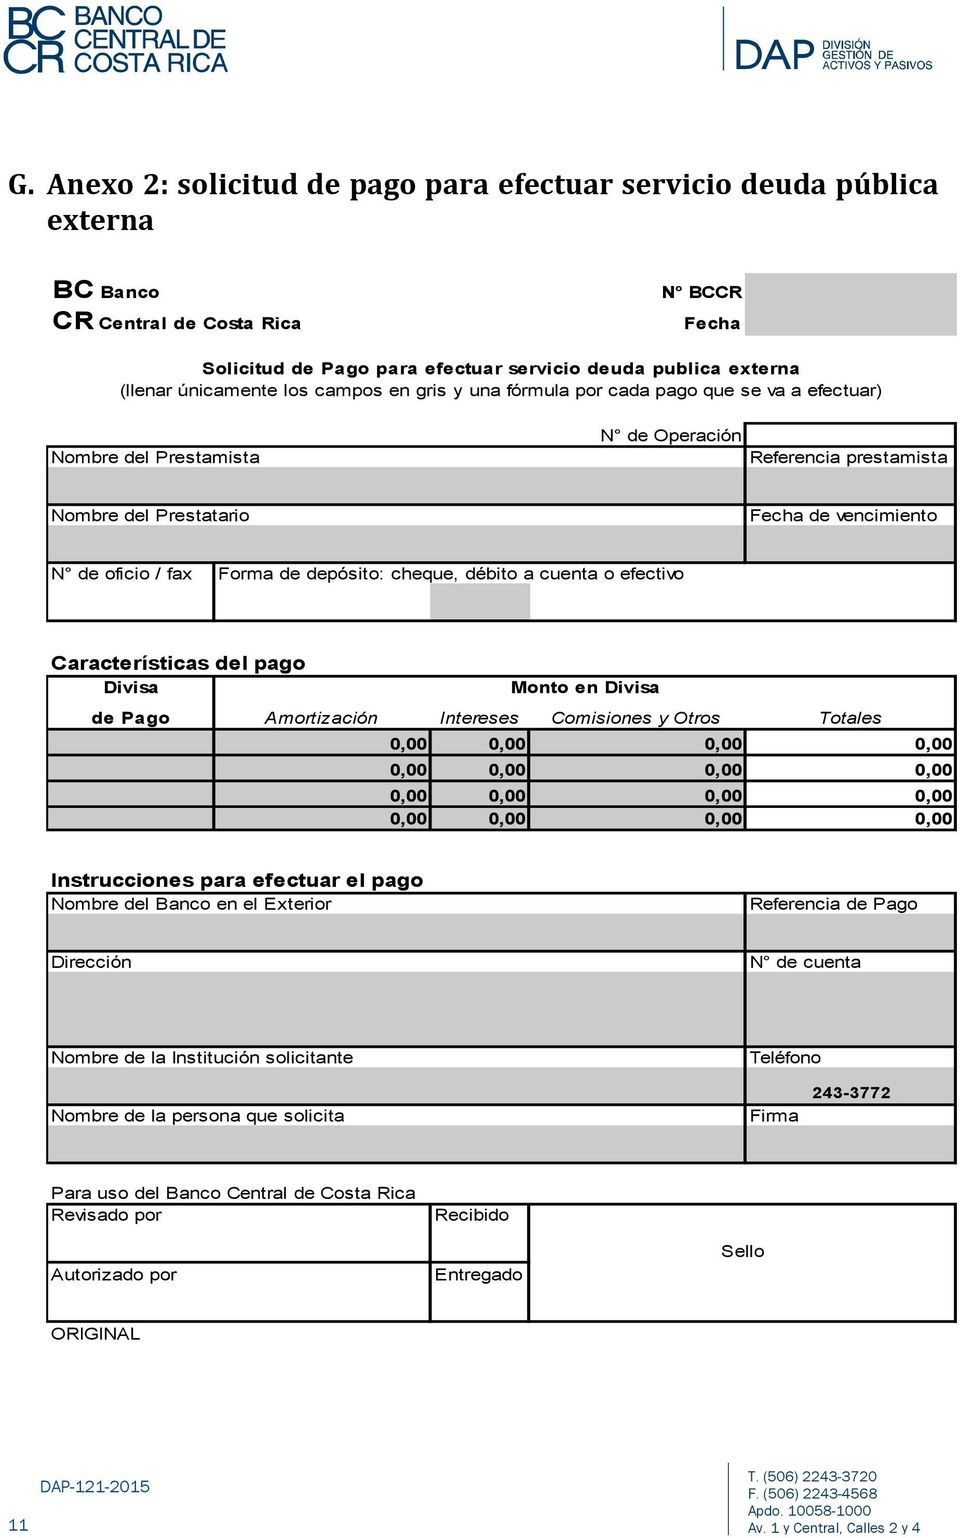 fax Forma de depósito: cheque, débito a cuenta o efectivo Características del pago Divisa Monto en Divisa de Pago Amortización Intereses Comisiones y Otros Totales 0,00 0,00 0,00 0,00 0,00 0,00 0,00